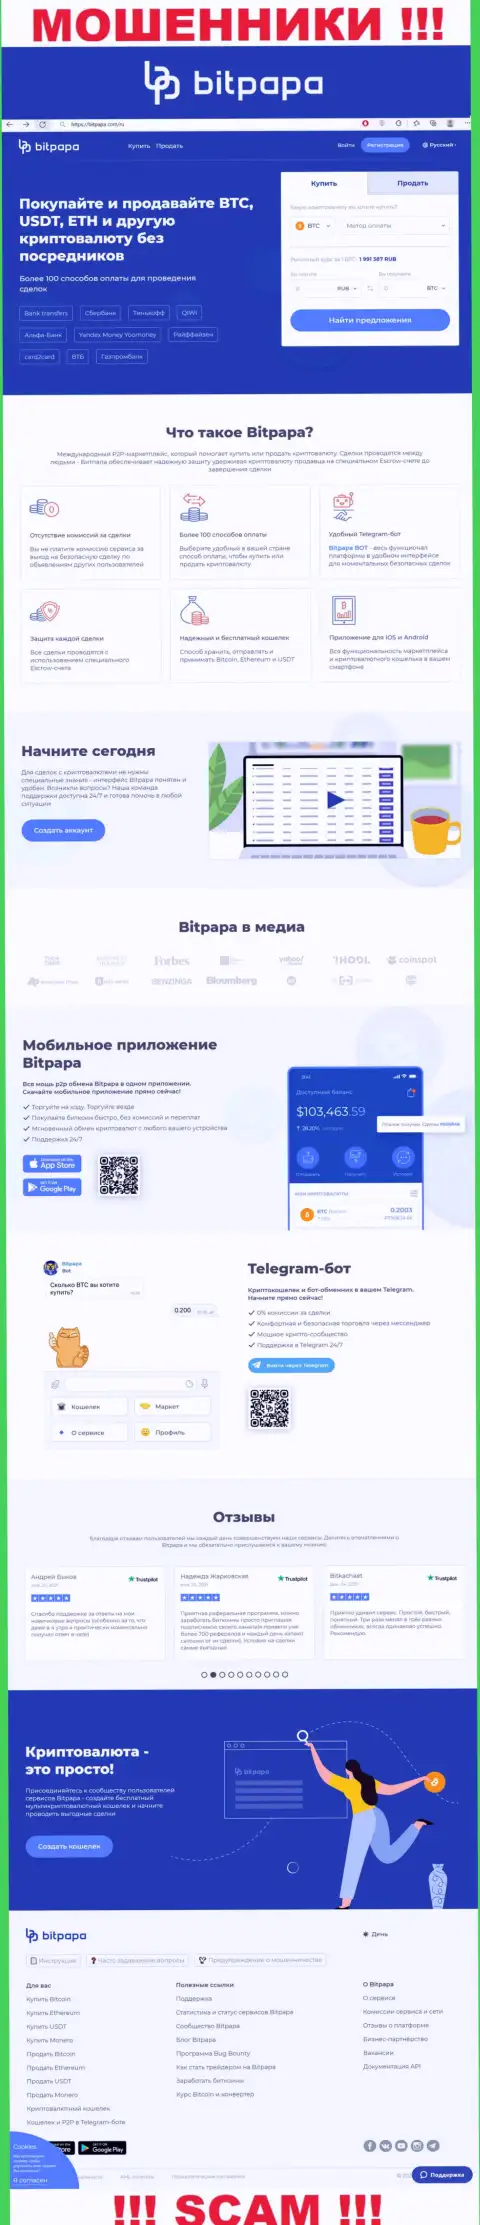 Фейковая информация от БитПапа ИК ФЗК ЛЛК на официальном сайте мошенников